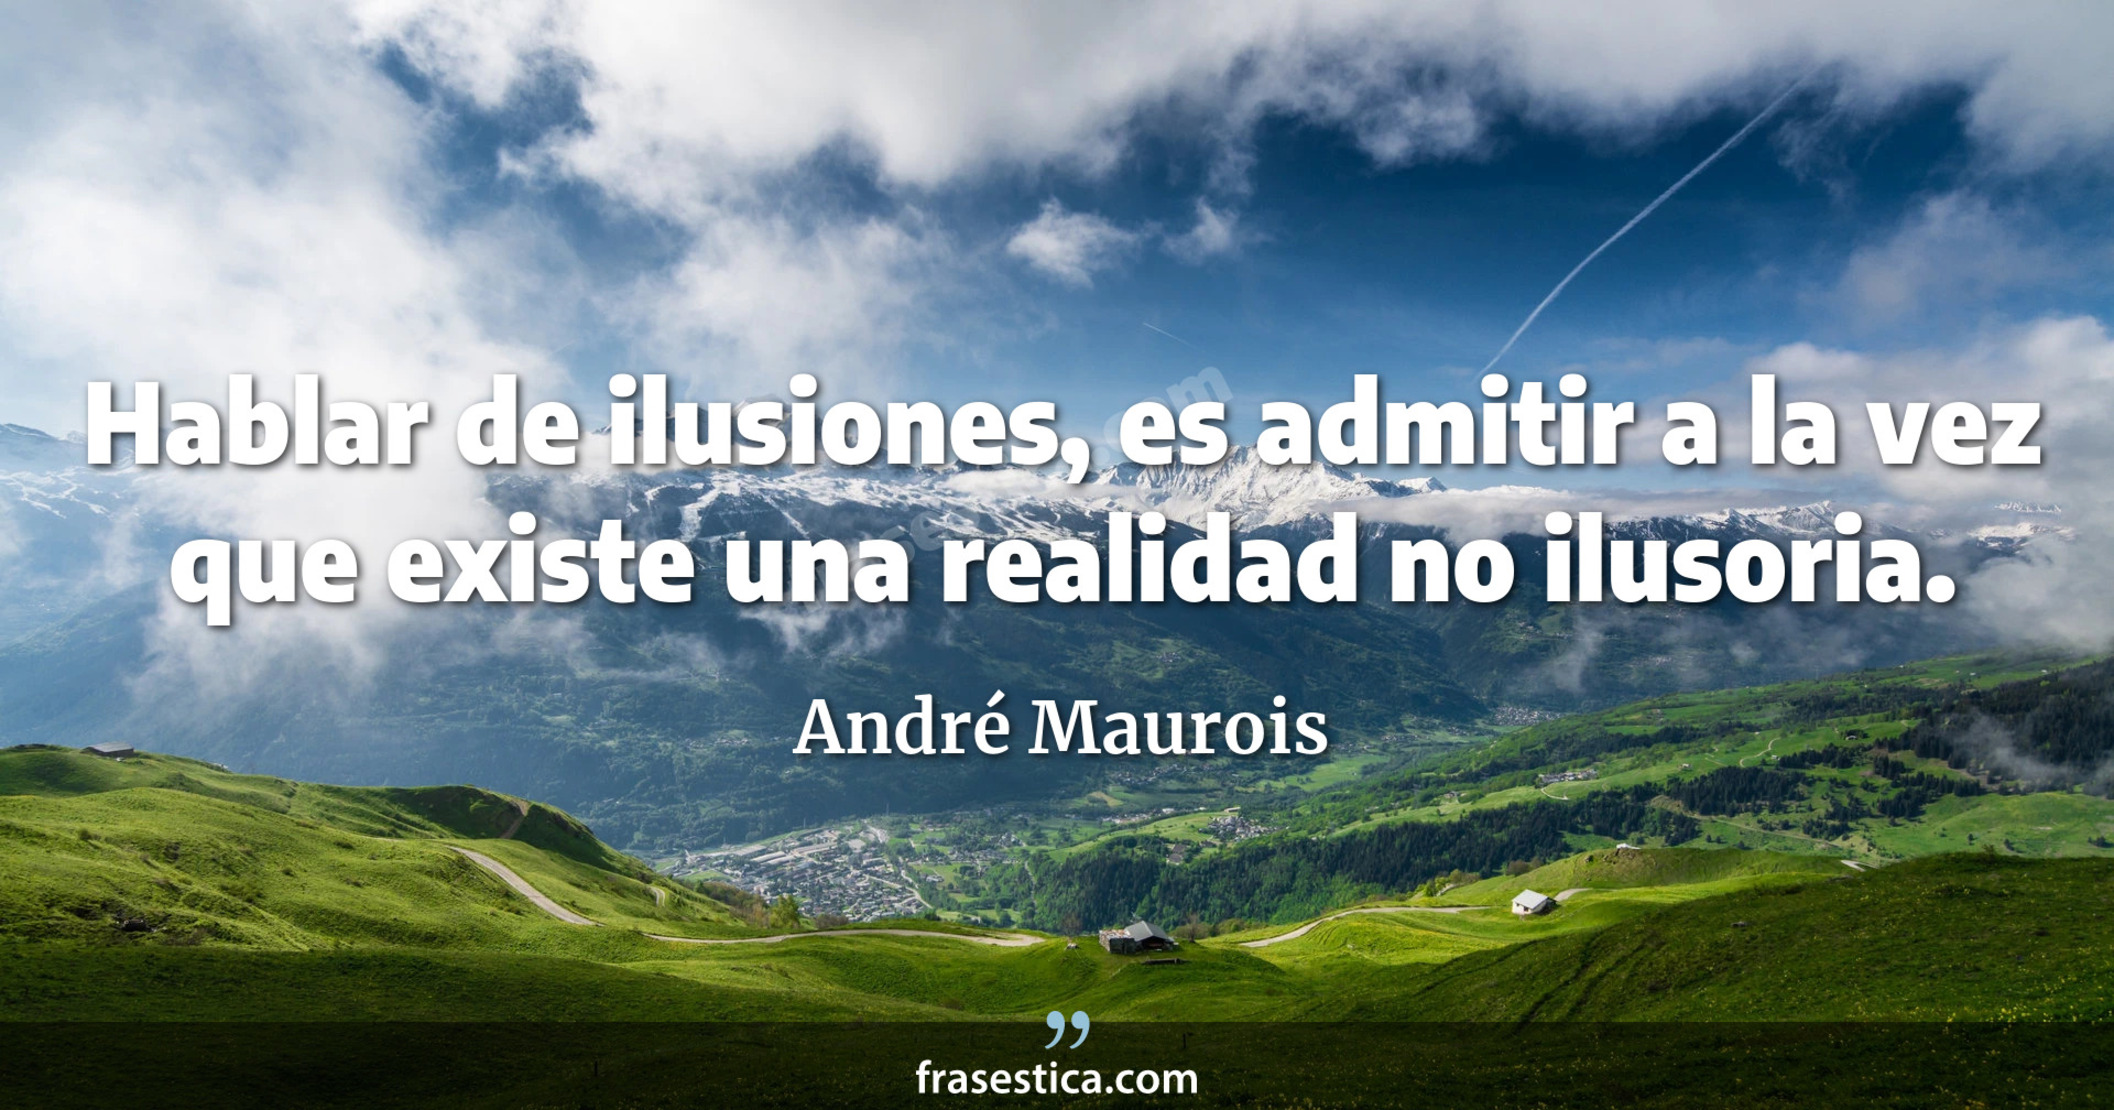 Hablar de ilusiones, es admitir a la vez que existe una realidad no ilusoria. - André Maurois